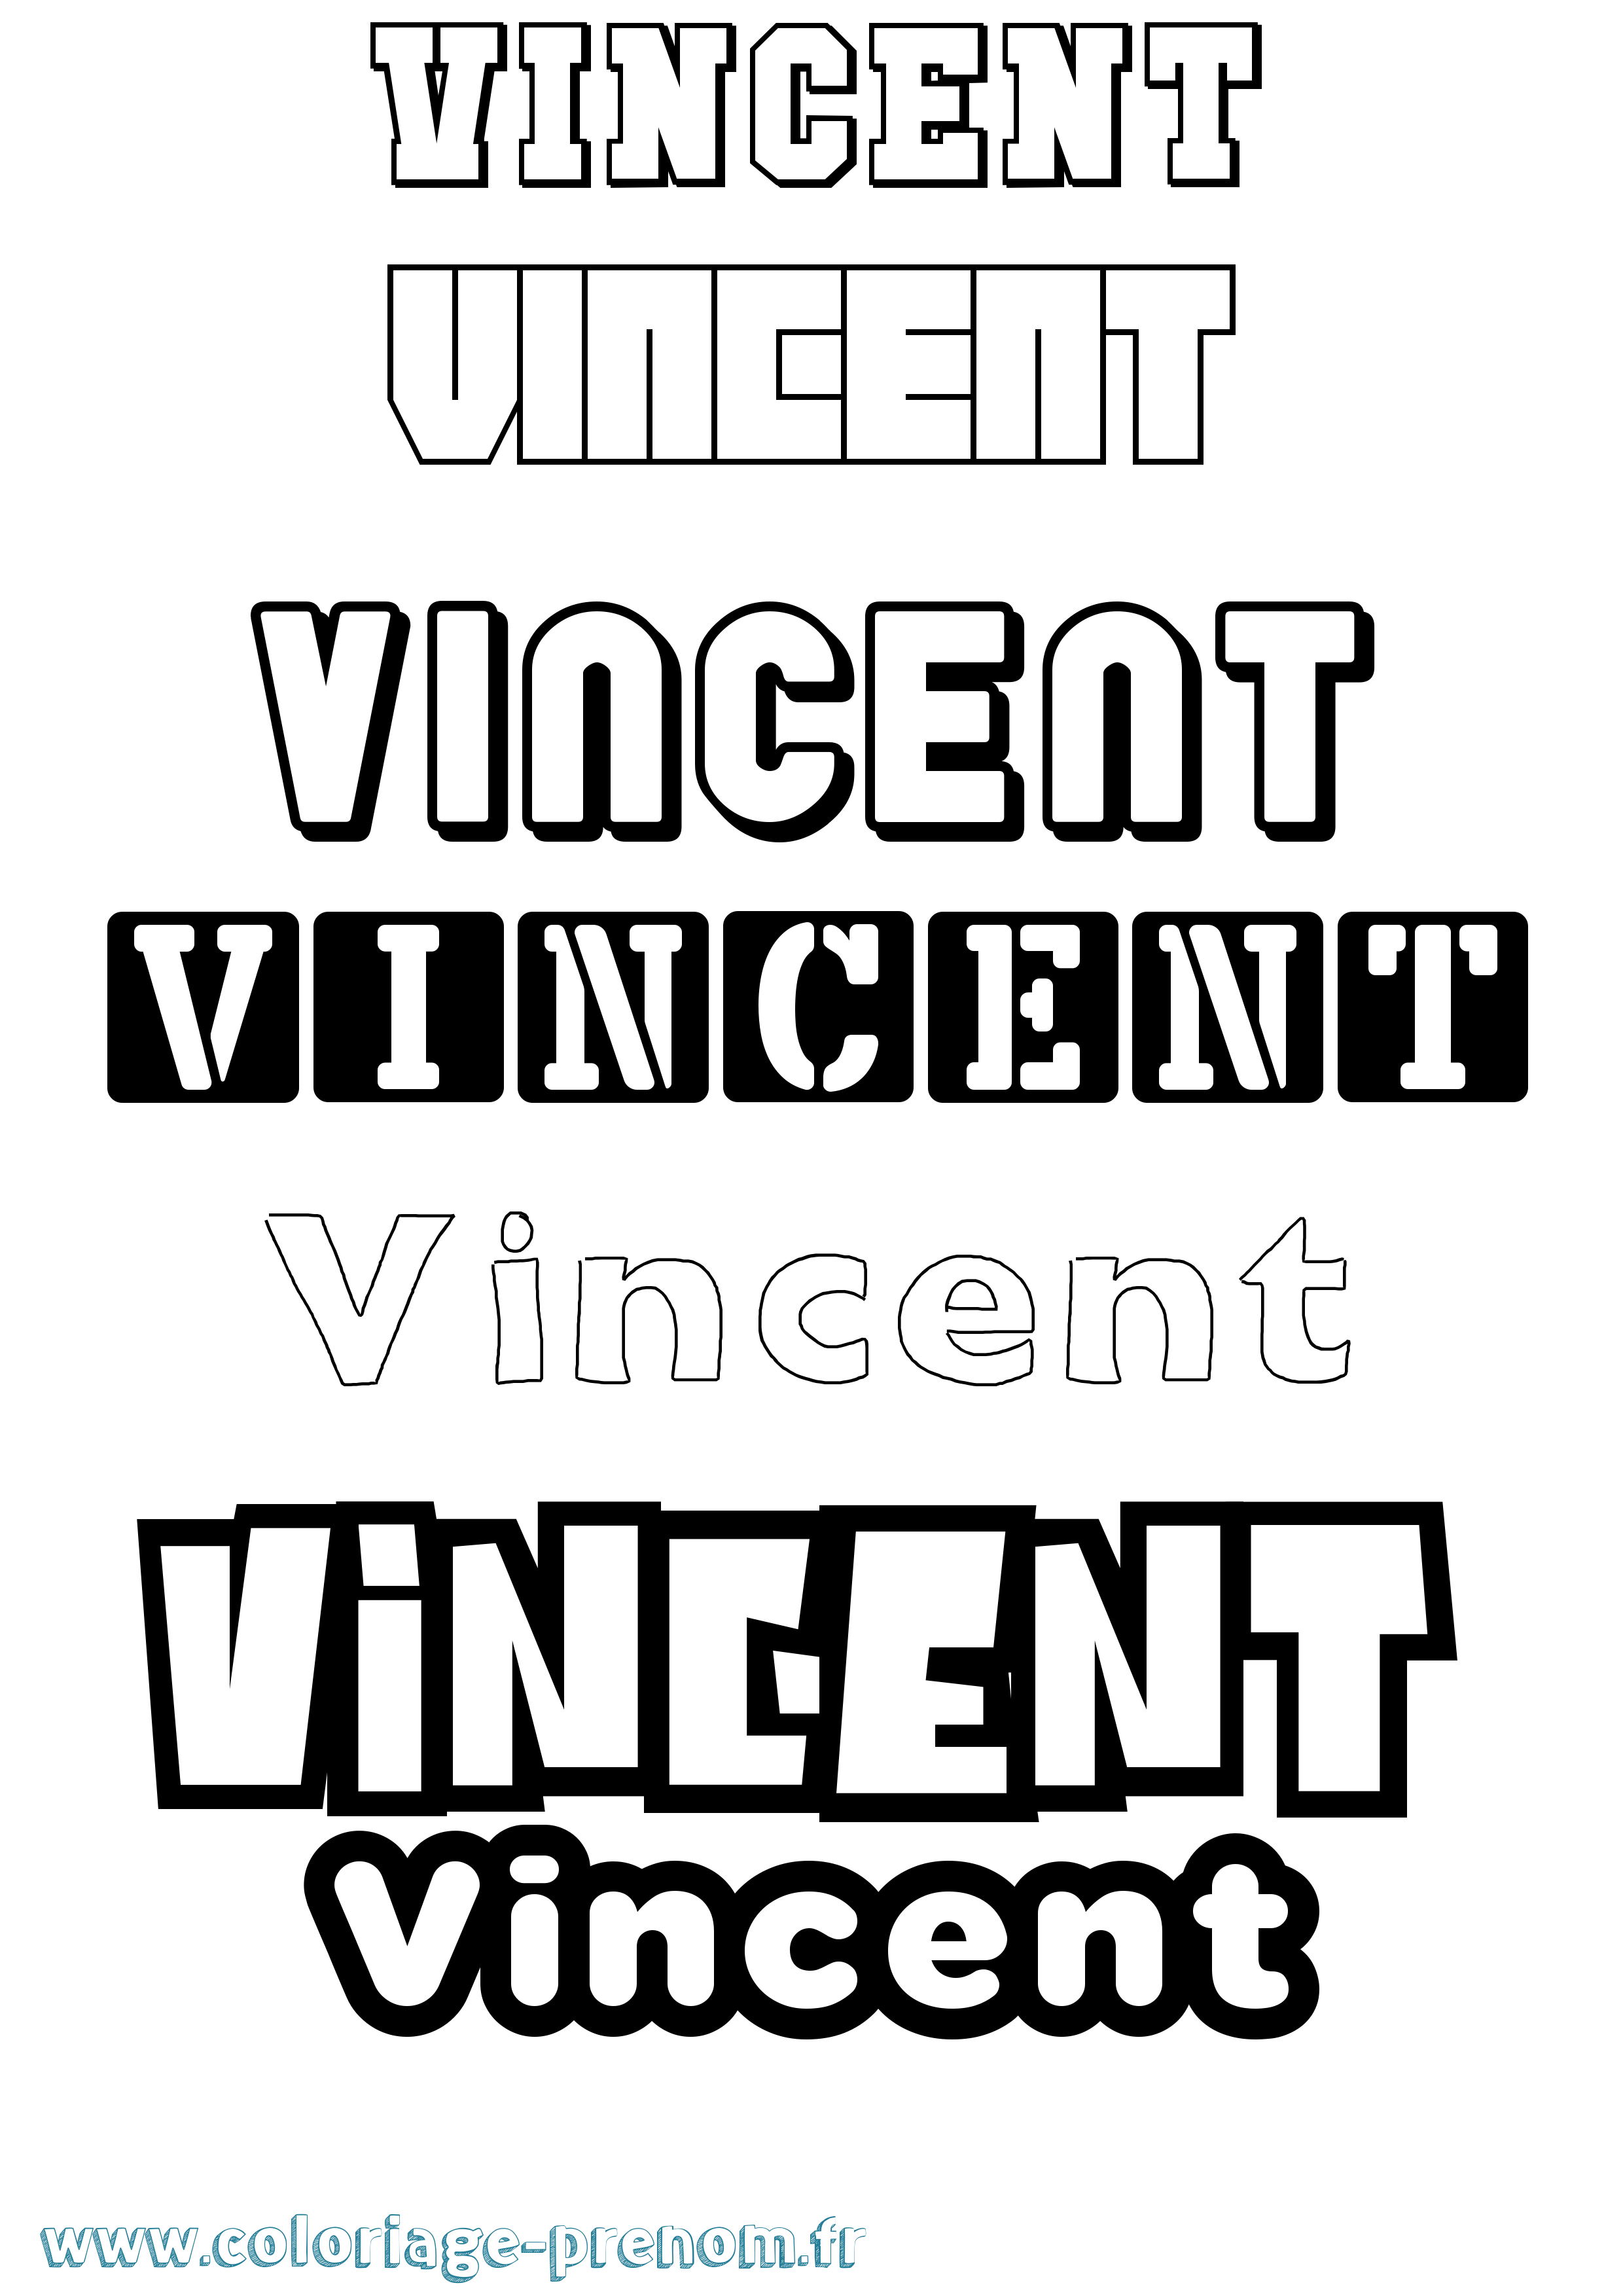 Coloriage prénom Vincent